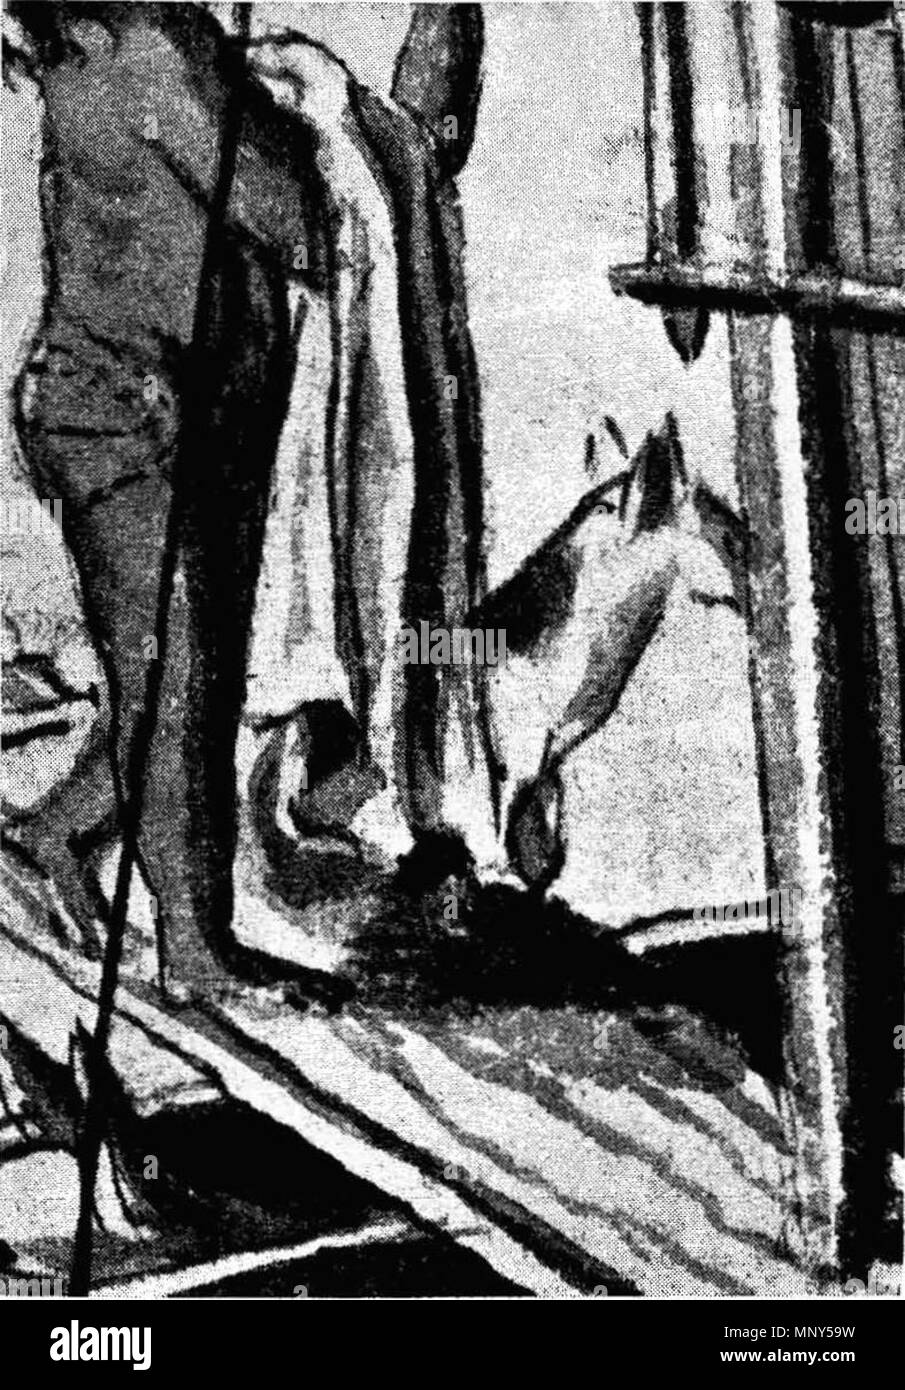 . Deutsch: "Schiffe der Insel Otaha", · Gesellschaft Inseln. Eine gefleckte Hund ist teilweise jenseits der Mast sichtbar. Aus der Sammlung des British Museum mit Zeichnungen von A. Buchan, S. Parkinson und J. F. Miller, in den besuchten Ländern durch Captain Cook in seiner ersten Reise (1768-71), auch der Drucke in Johannes Hawkesworth der Voy-Alter von Biron, Wallis und Koch, 1773 veröffentlicht, sowie in der Zweiten und Dritten reisen Cooks (1762-5, 1776-80). Zwischen 1768 und 1771. A. Buchan, S. Parkinson oder J. F. Miller 1231 Schiffe der Insel Otaha, 1769-71 (Getreide der Hund) Stockfoto